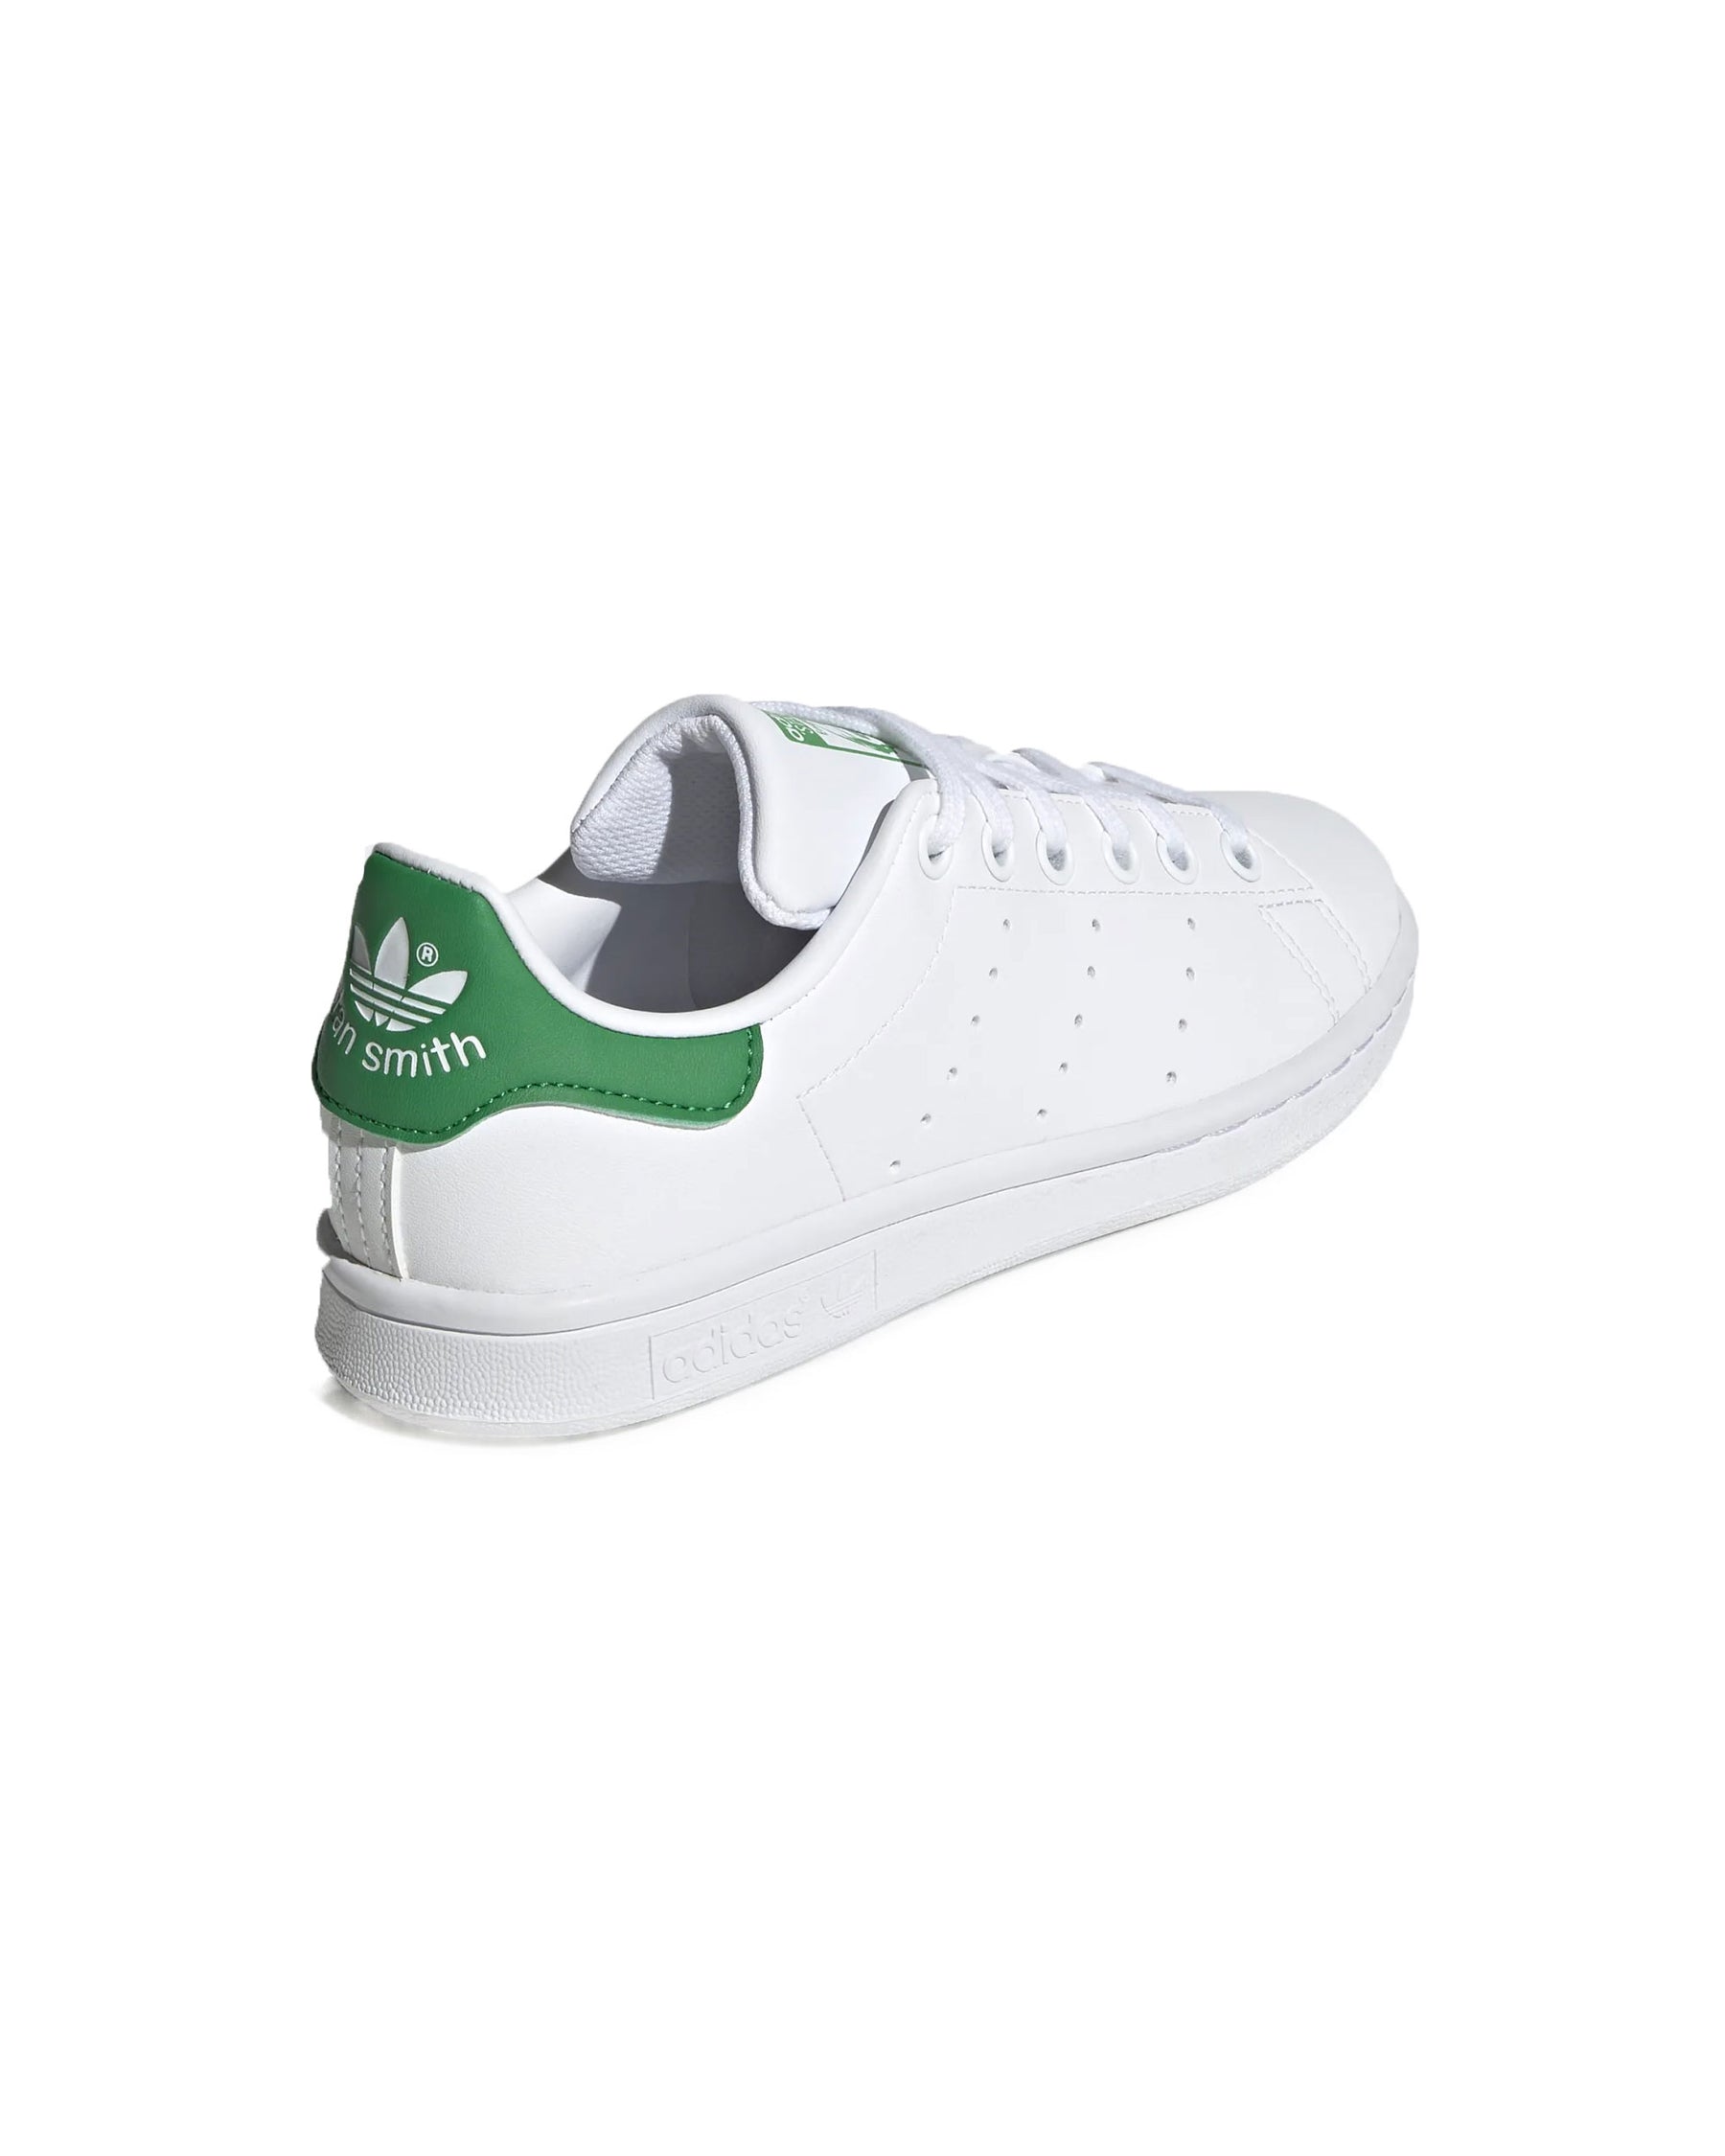 Adidas Stan Smith J White Green